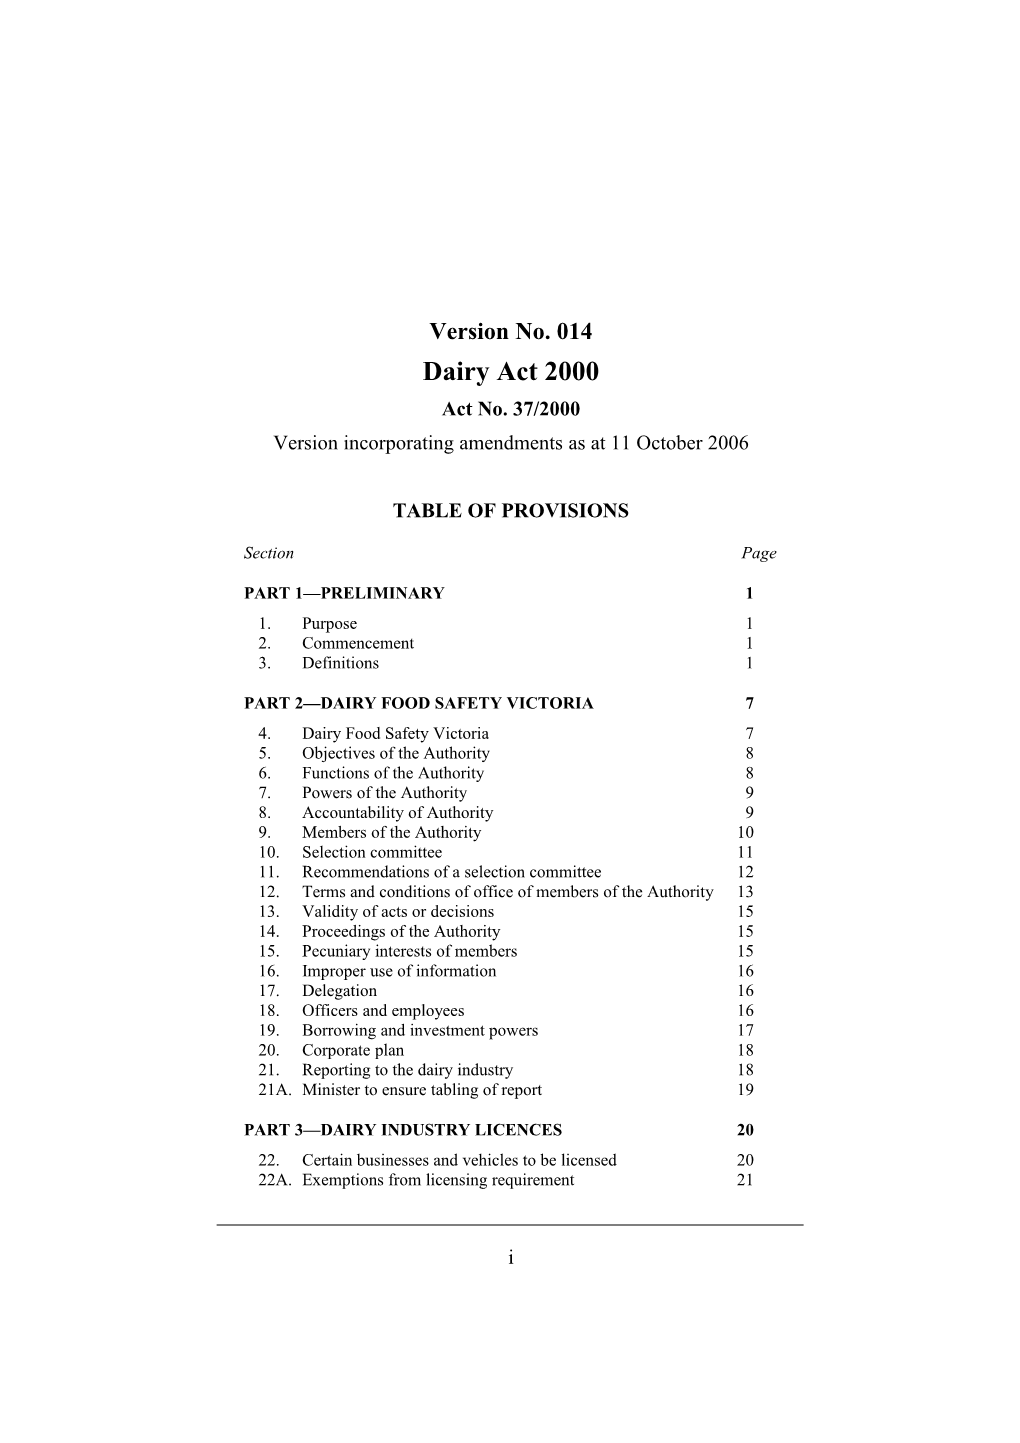 Version Incorporating Amendments As at 11 October 2006